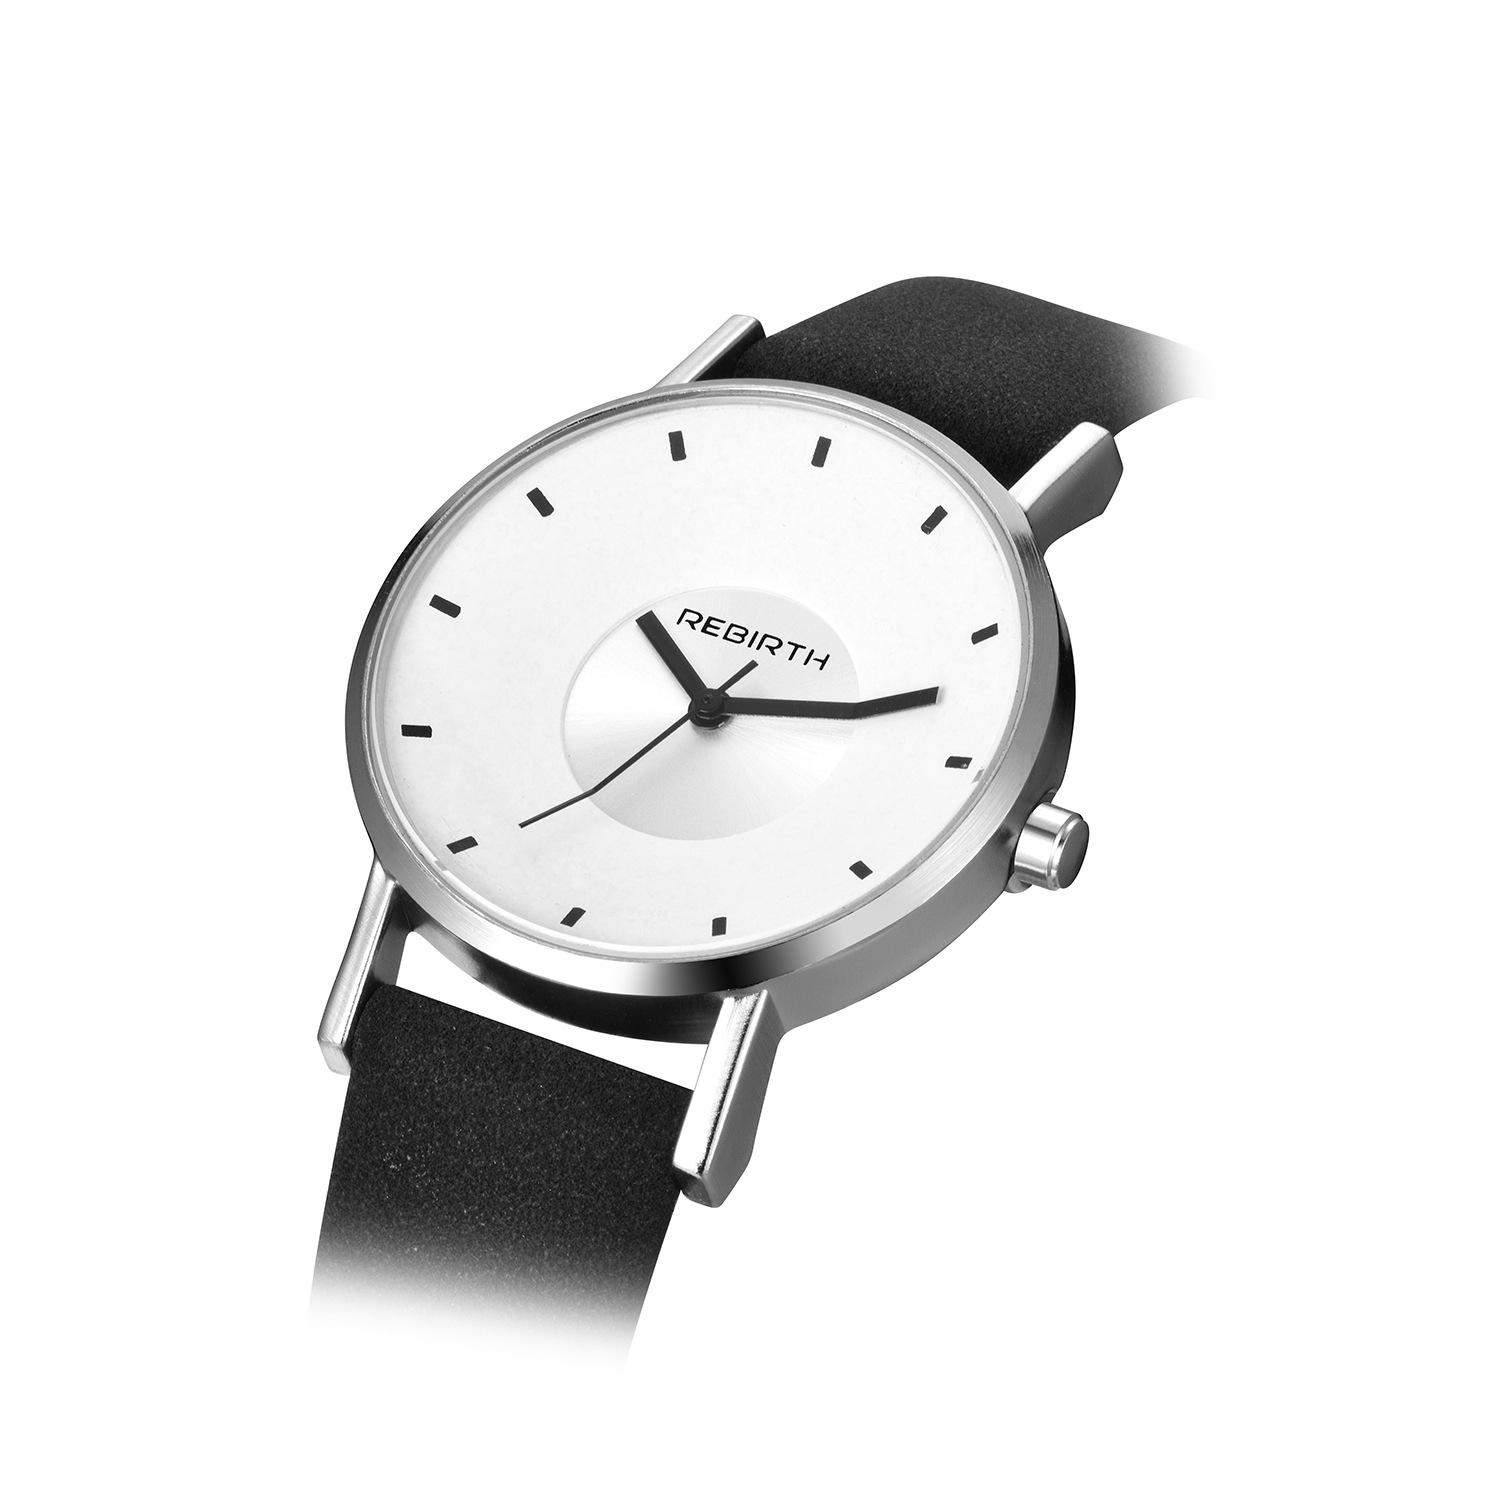 ساعت مچی سه بعدی Rebirth + دستبند طرح دمبل (مشکی- صفحه سفید)